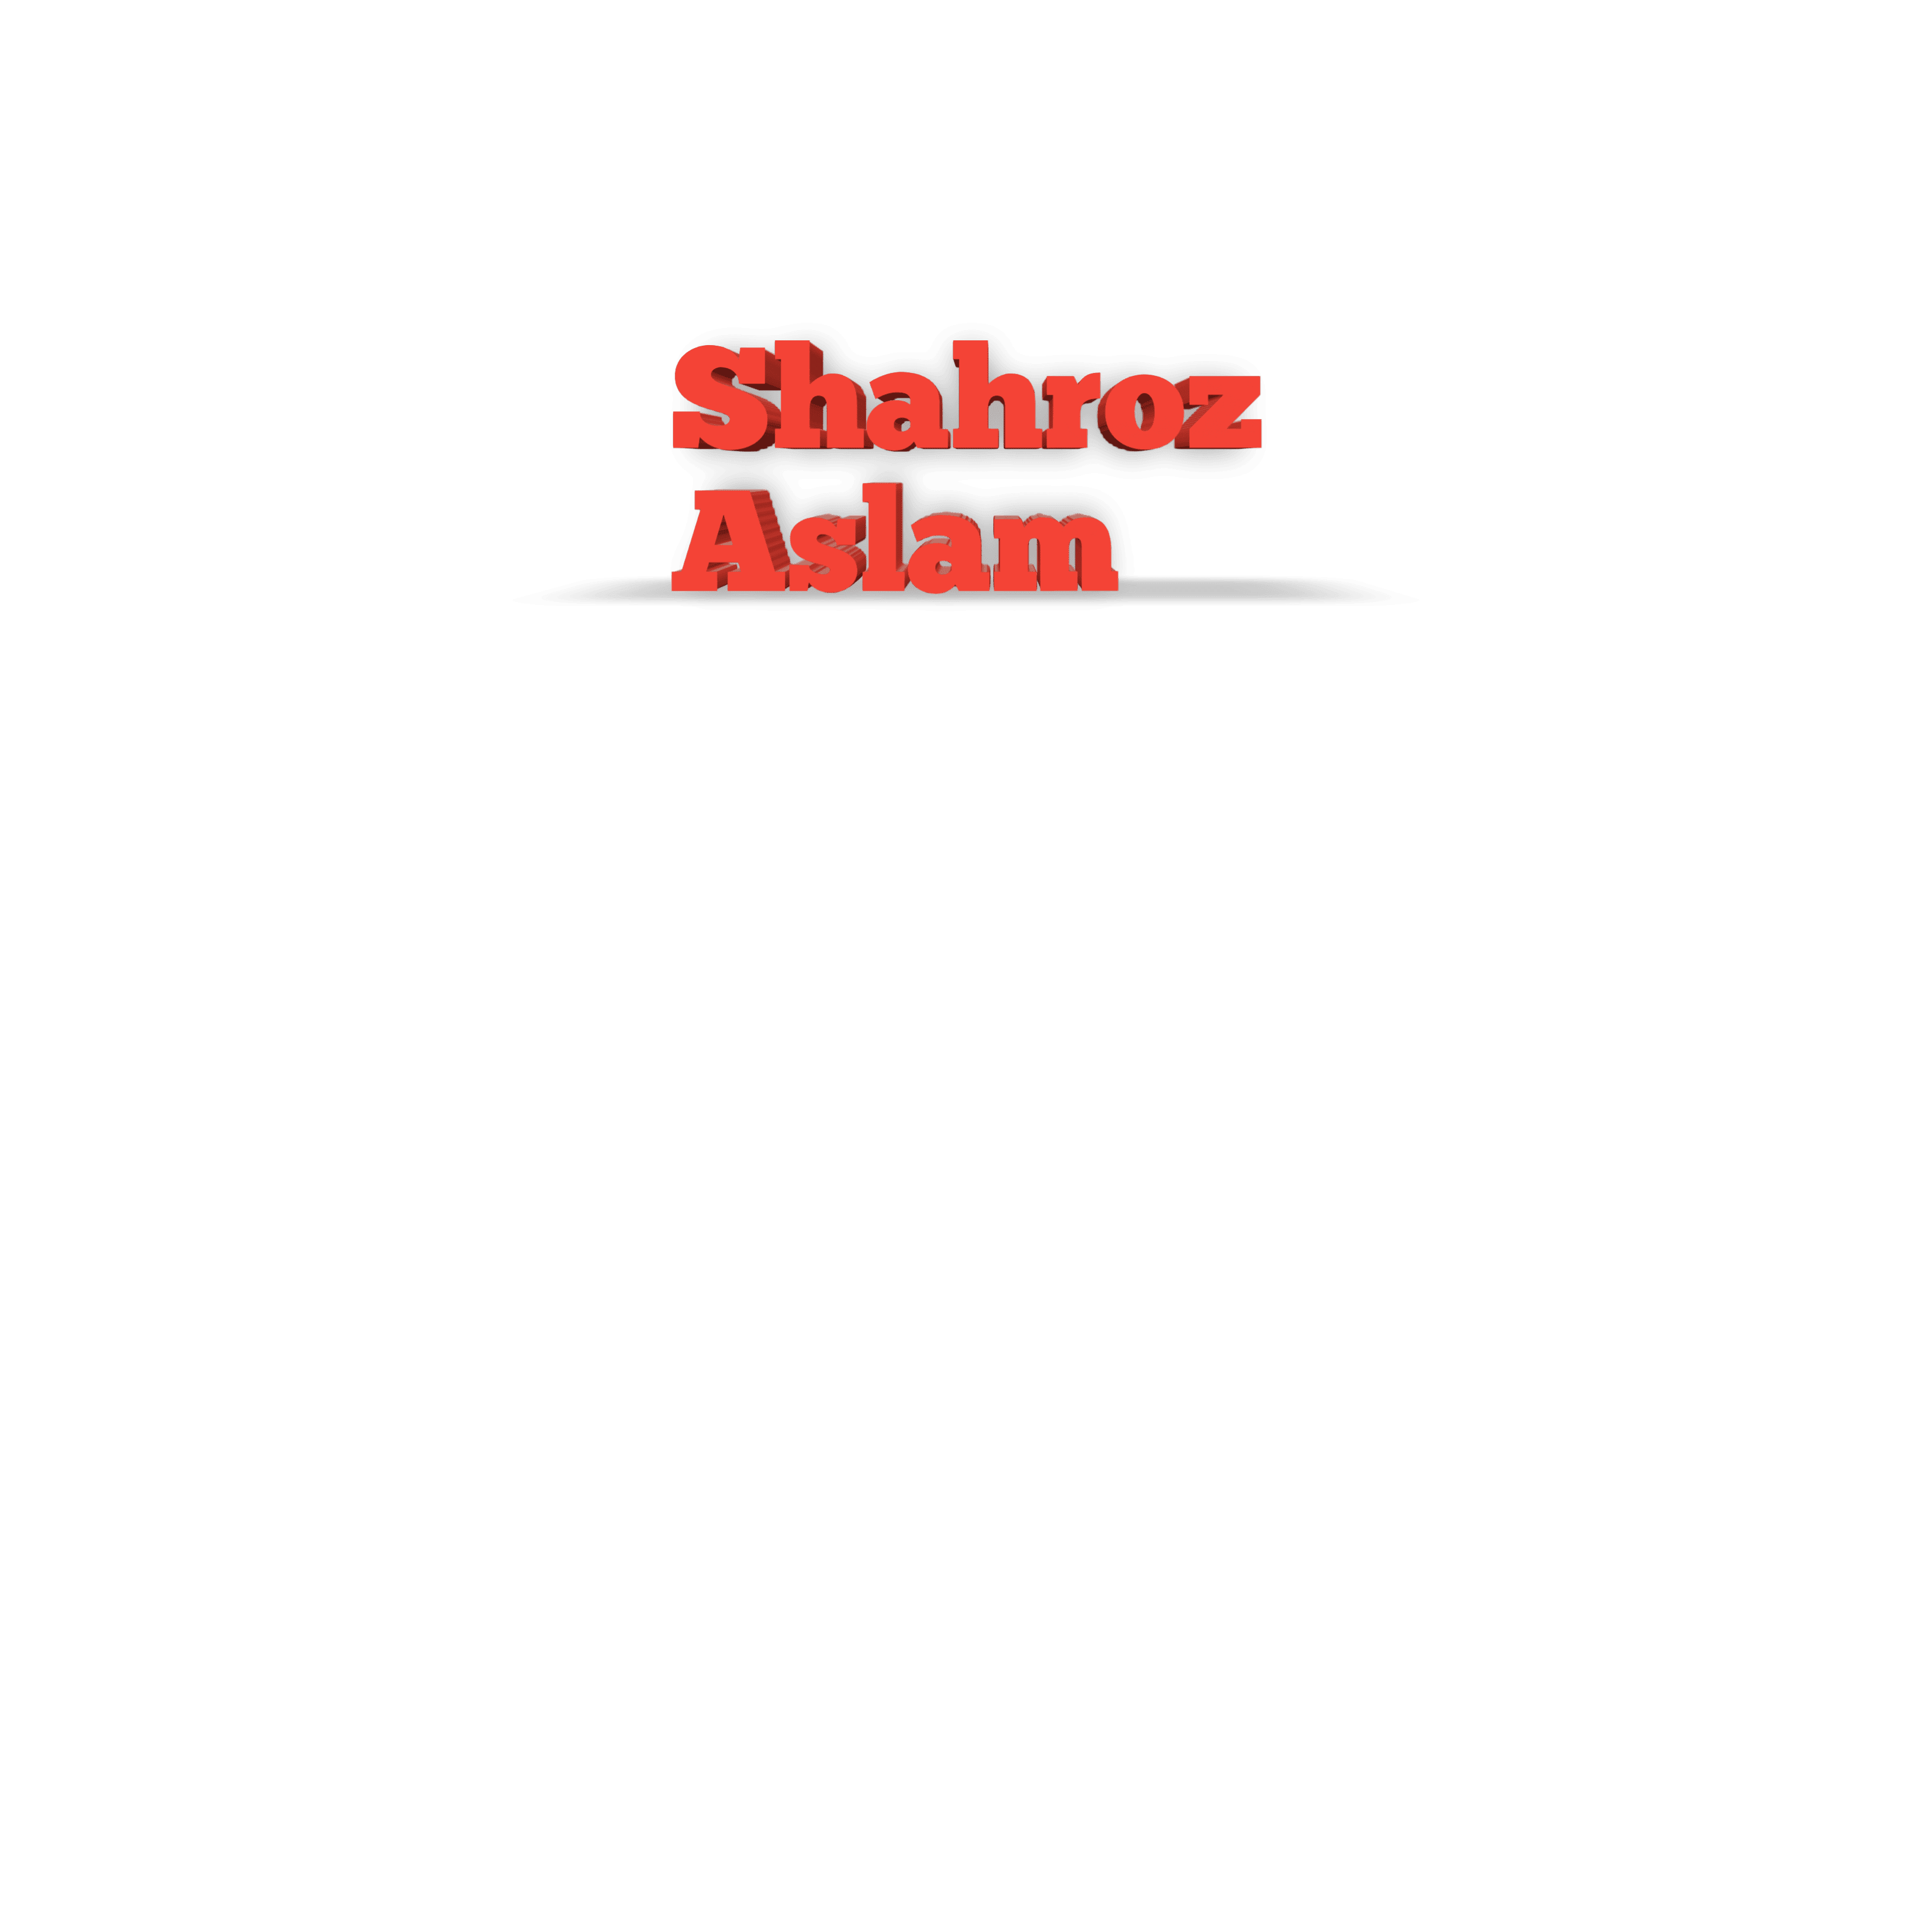 Shahroz Aslam